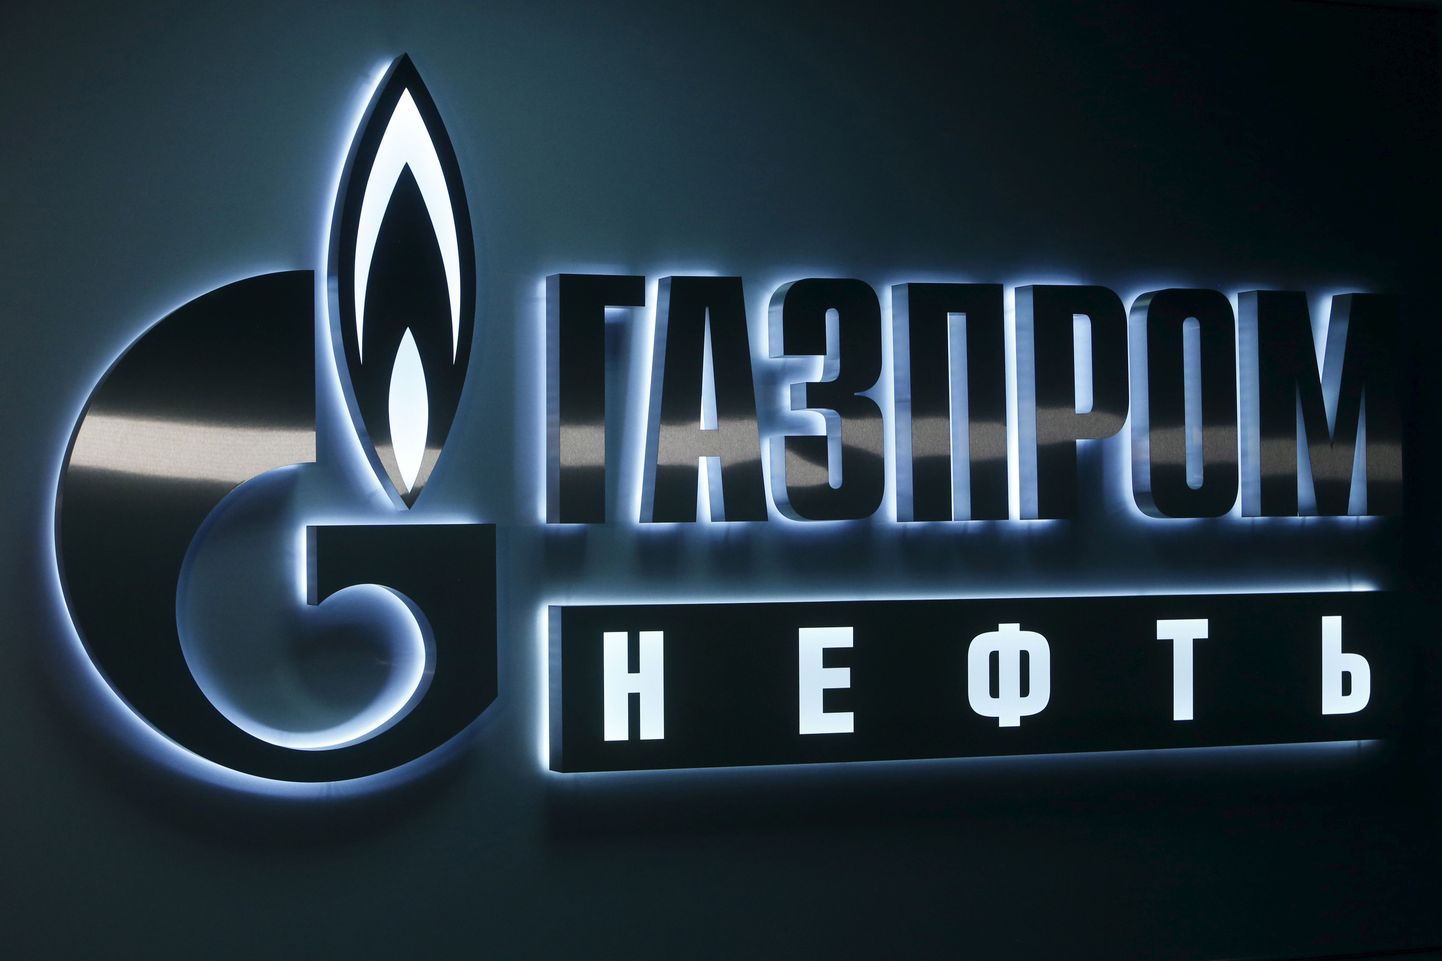 Gazpromi logo.